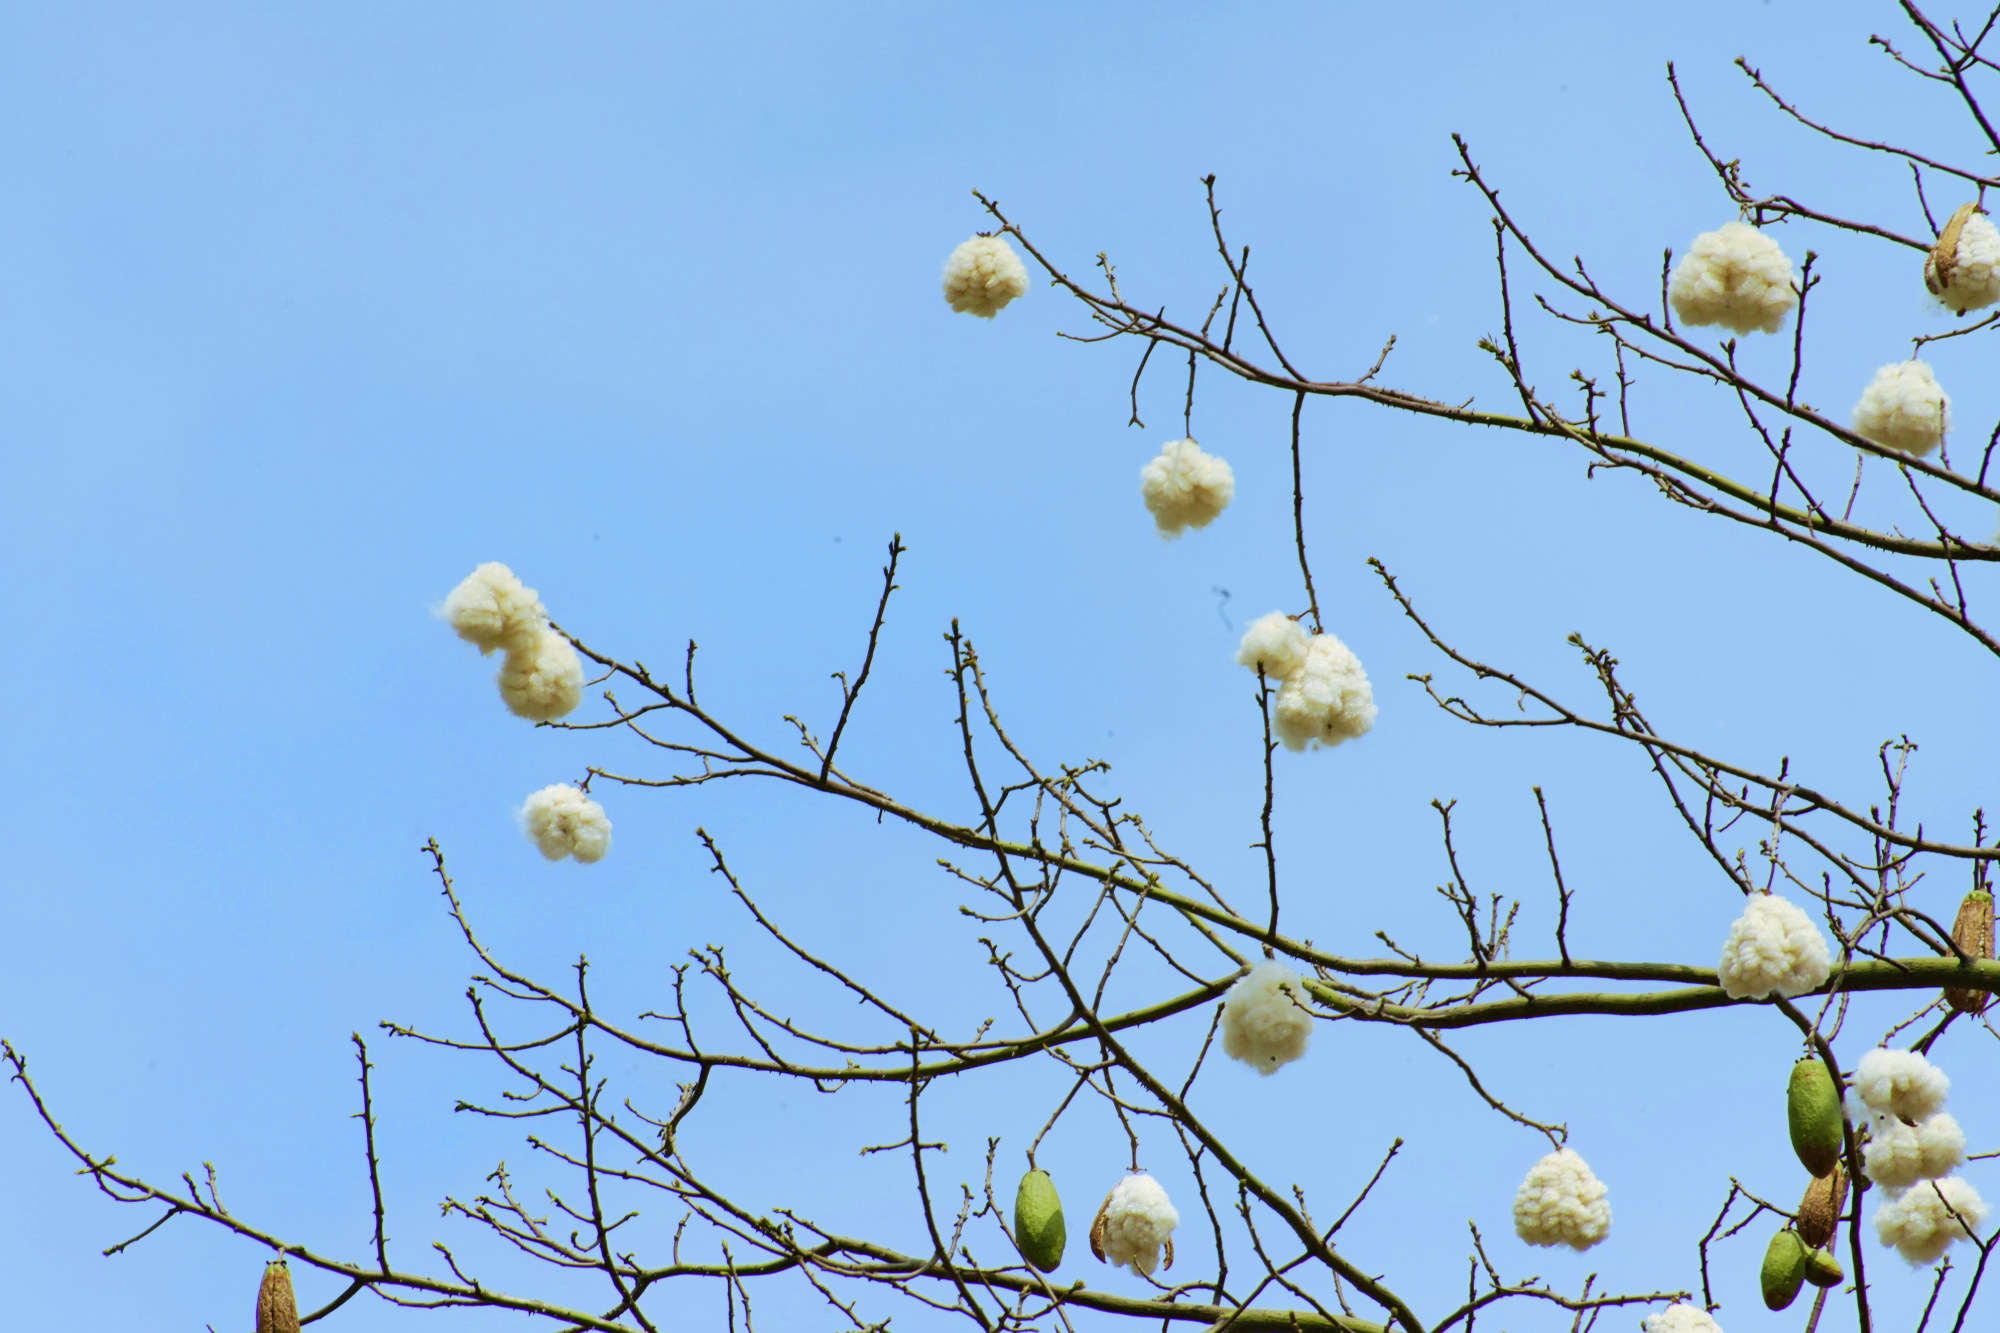 美丽异木棉春天开出朵朵雪白棉花